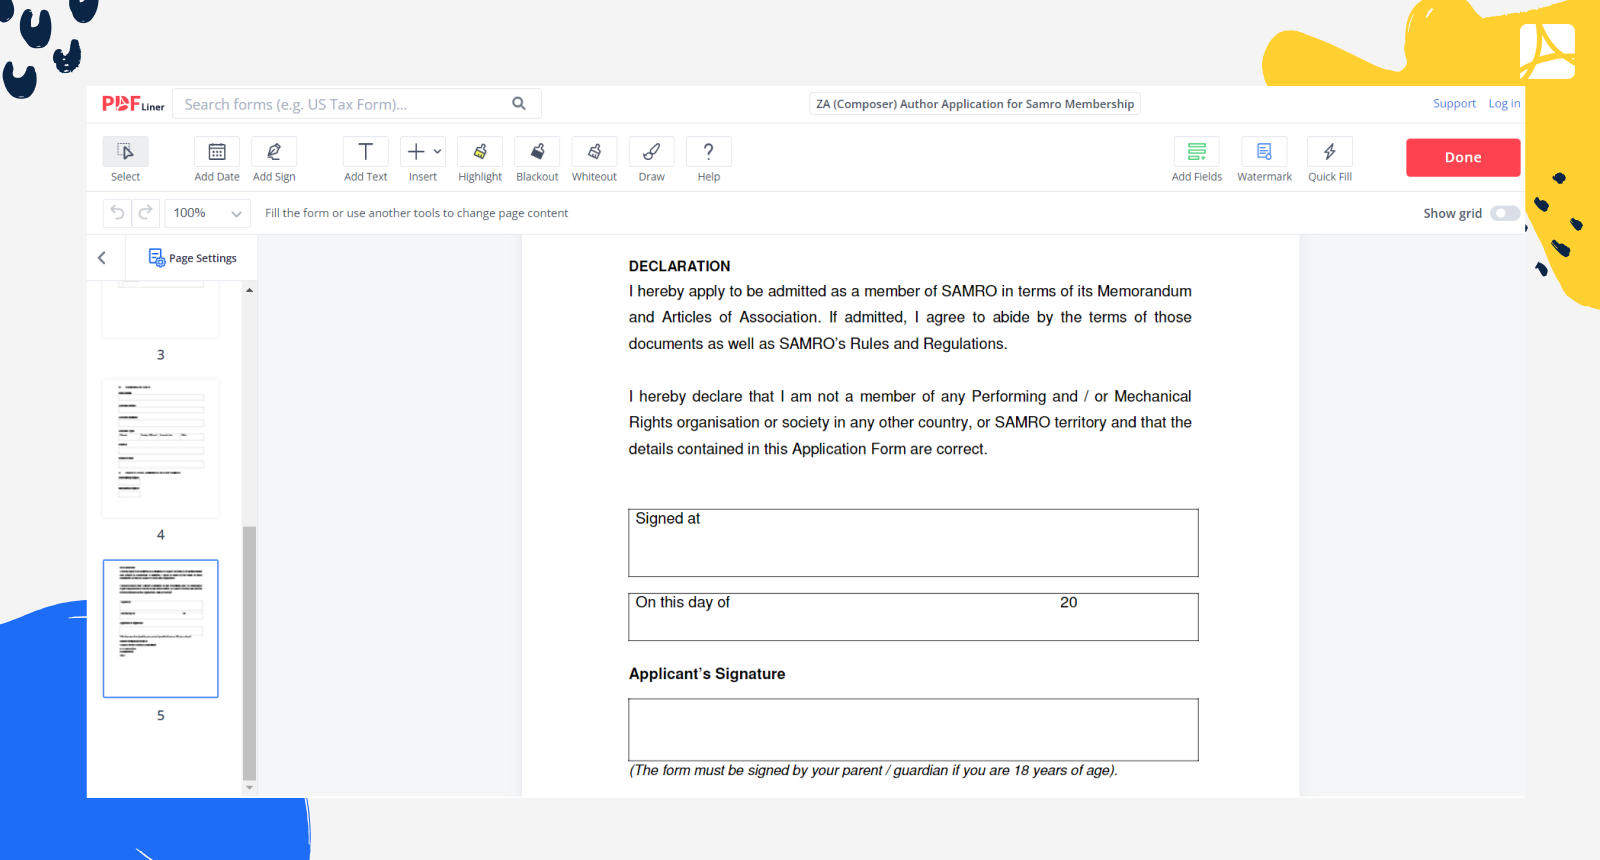 ZA (Composer) Author Application for Samro Membership Form Screenshot 2